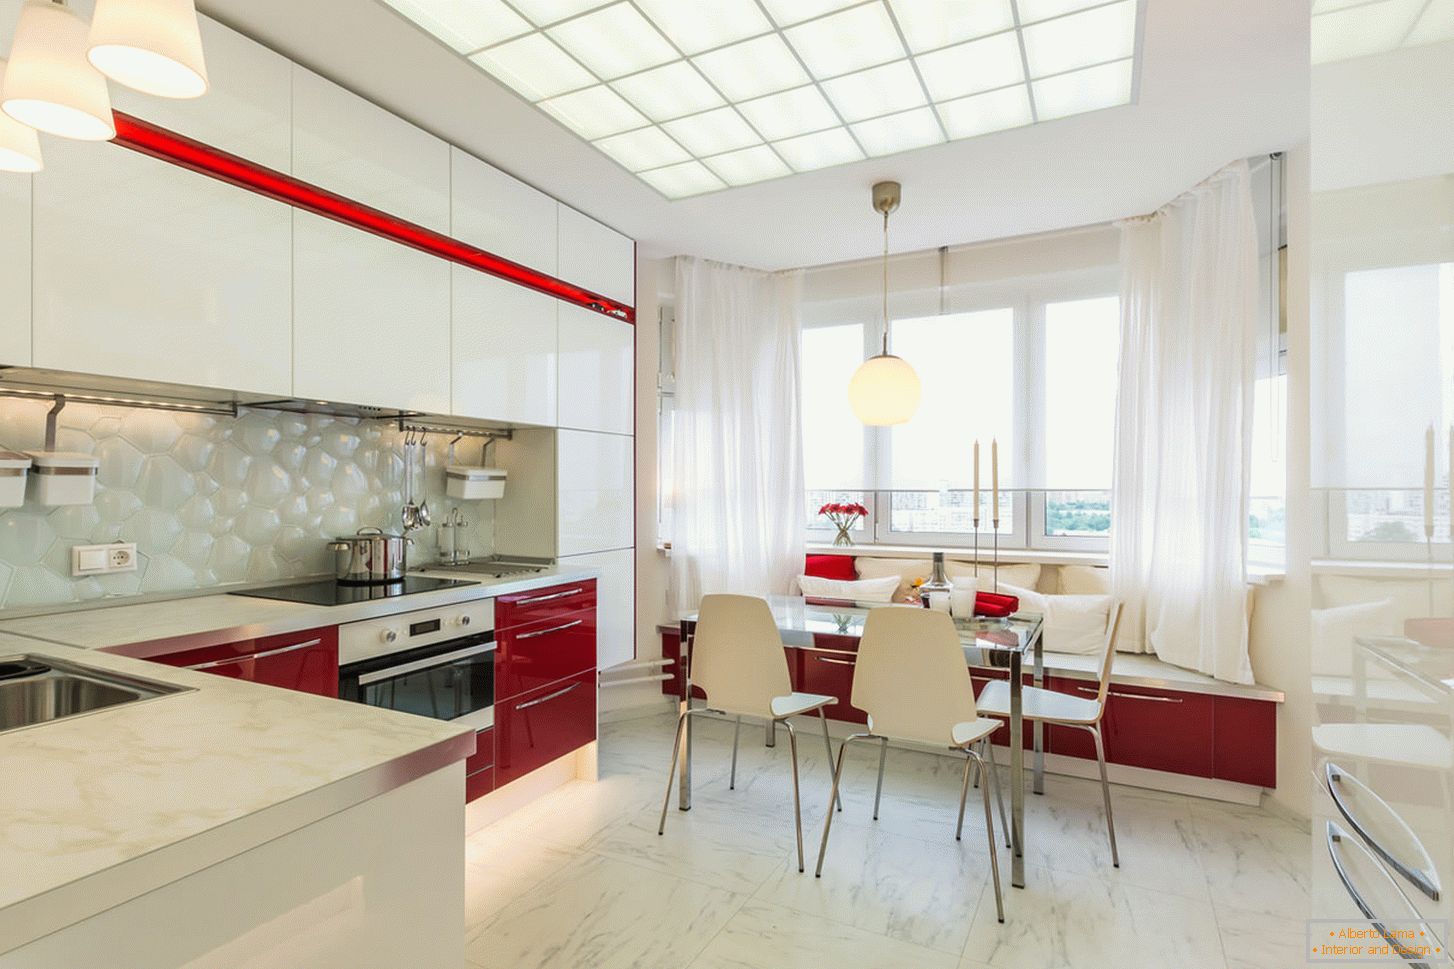 Cucina interna chic nei colori bianco e rosso